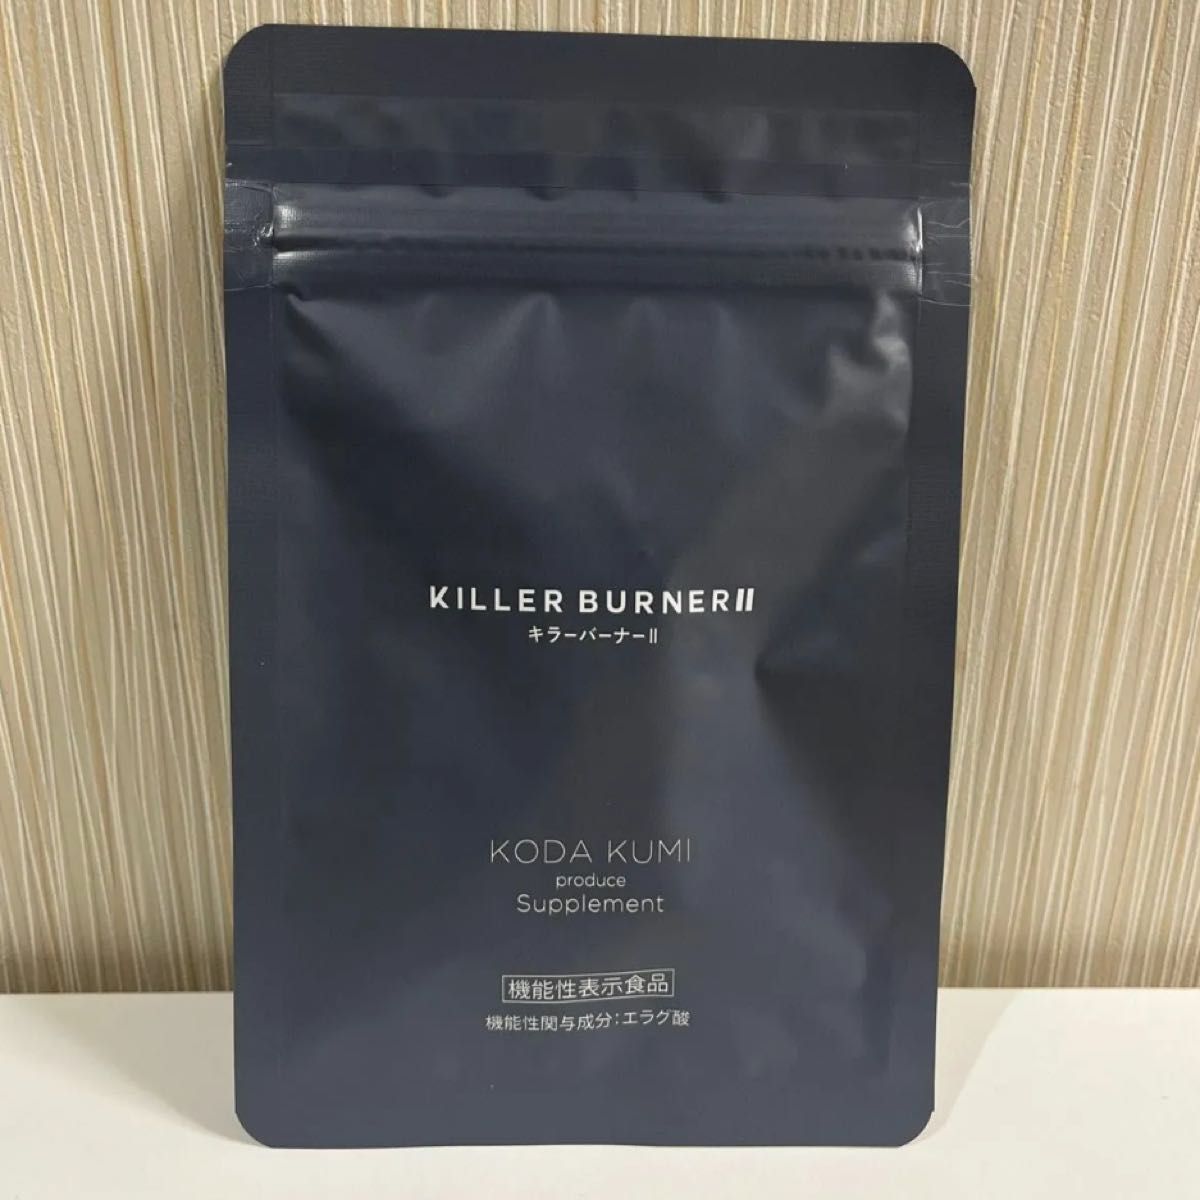 キラーバーナー2 KILLER BURNER II キラーバーナーツー 倖田來未プロデュース